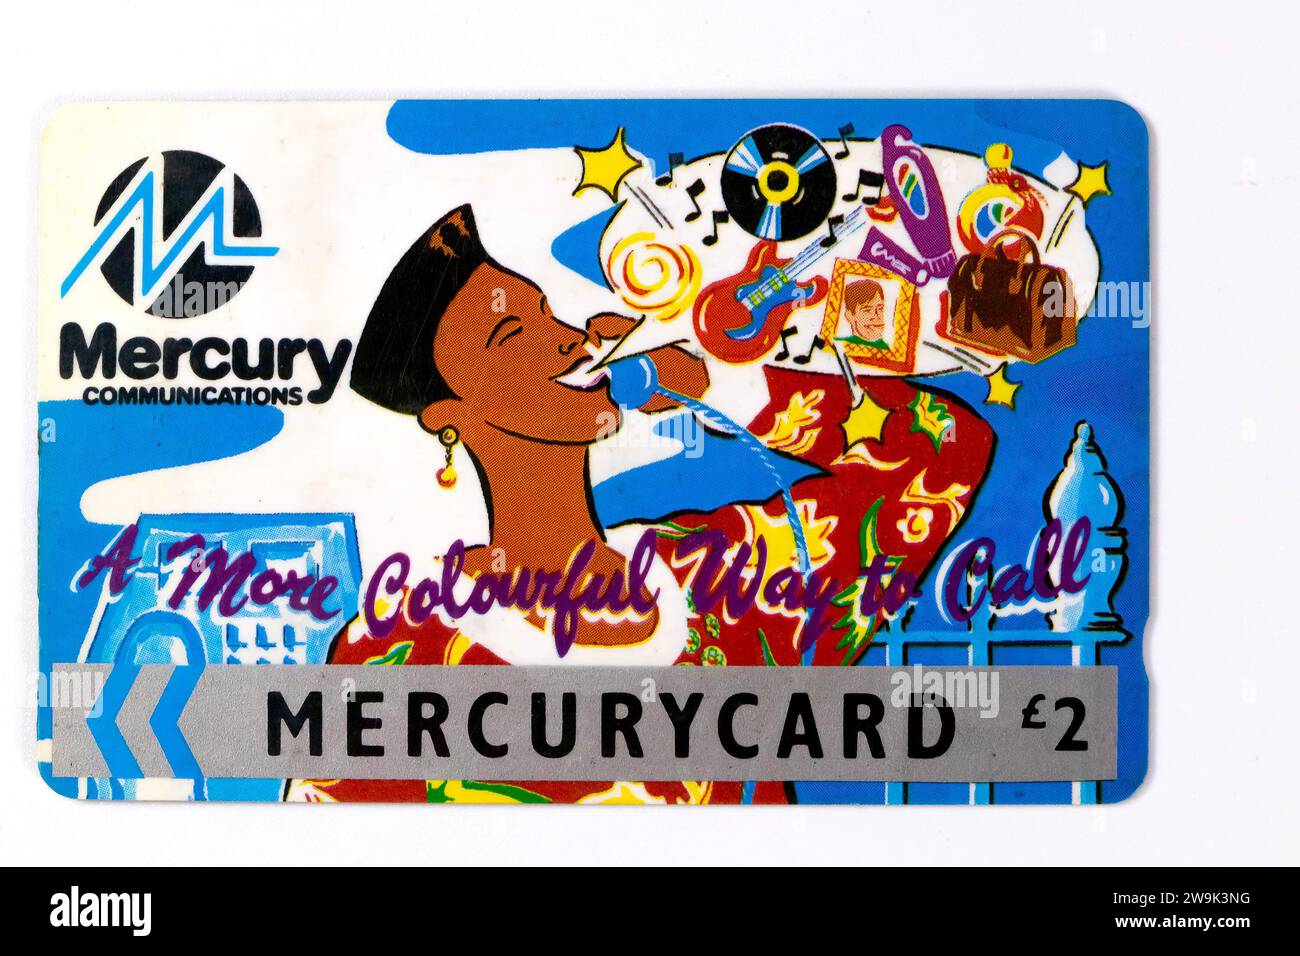 une carte téléphonique en plastique mercurycard d'une valeur de 2 £ pour les communications au mercure Banque D'Images